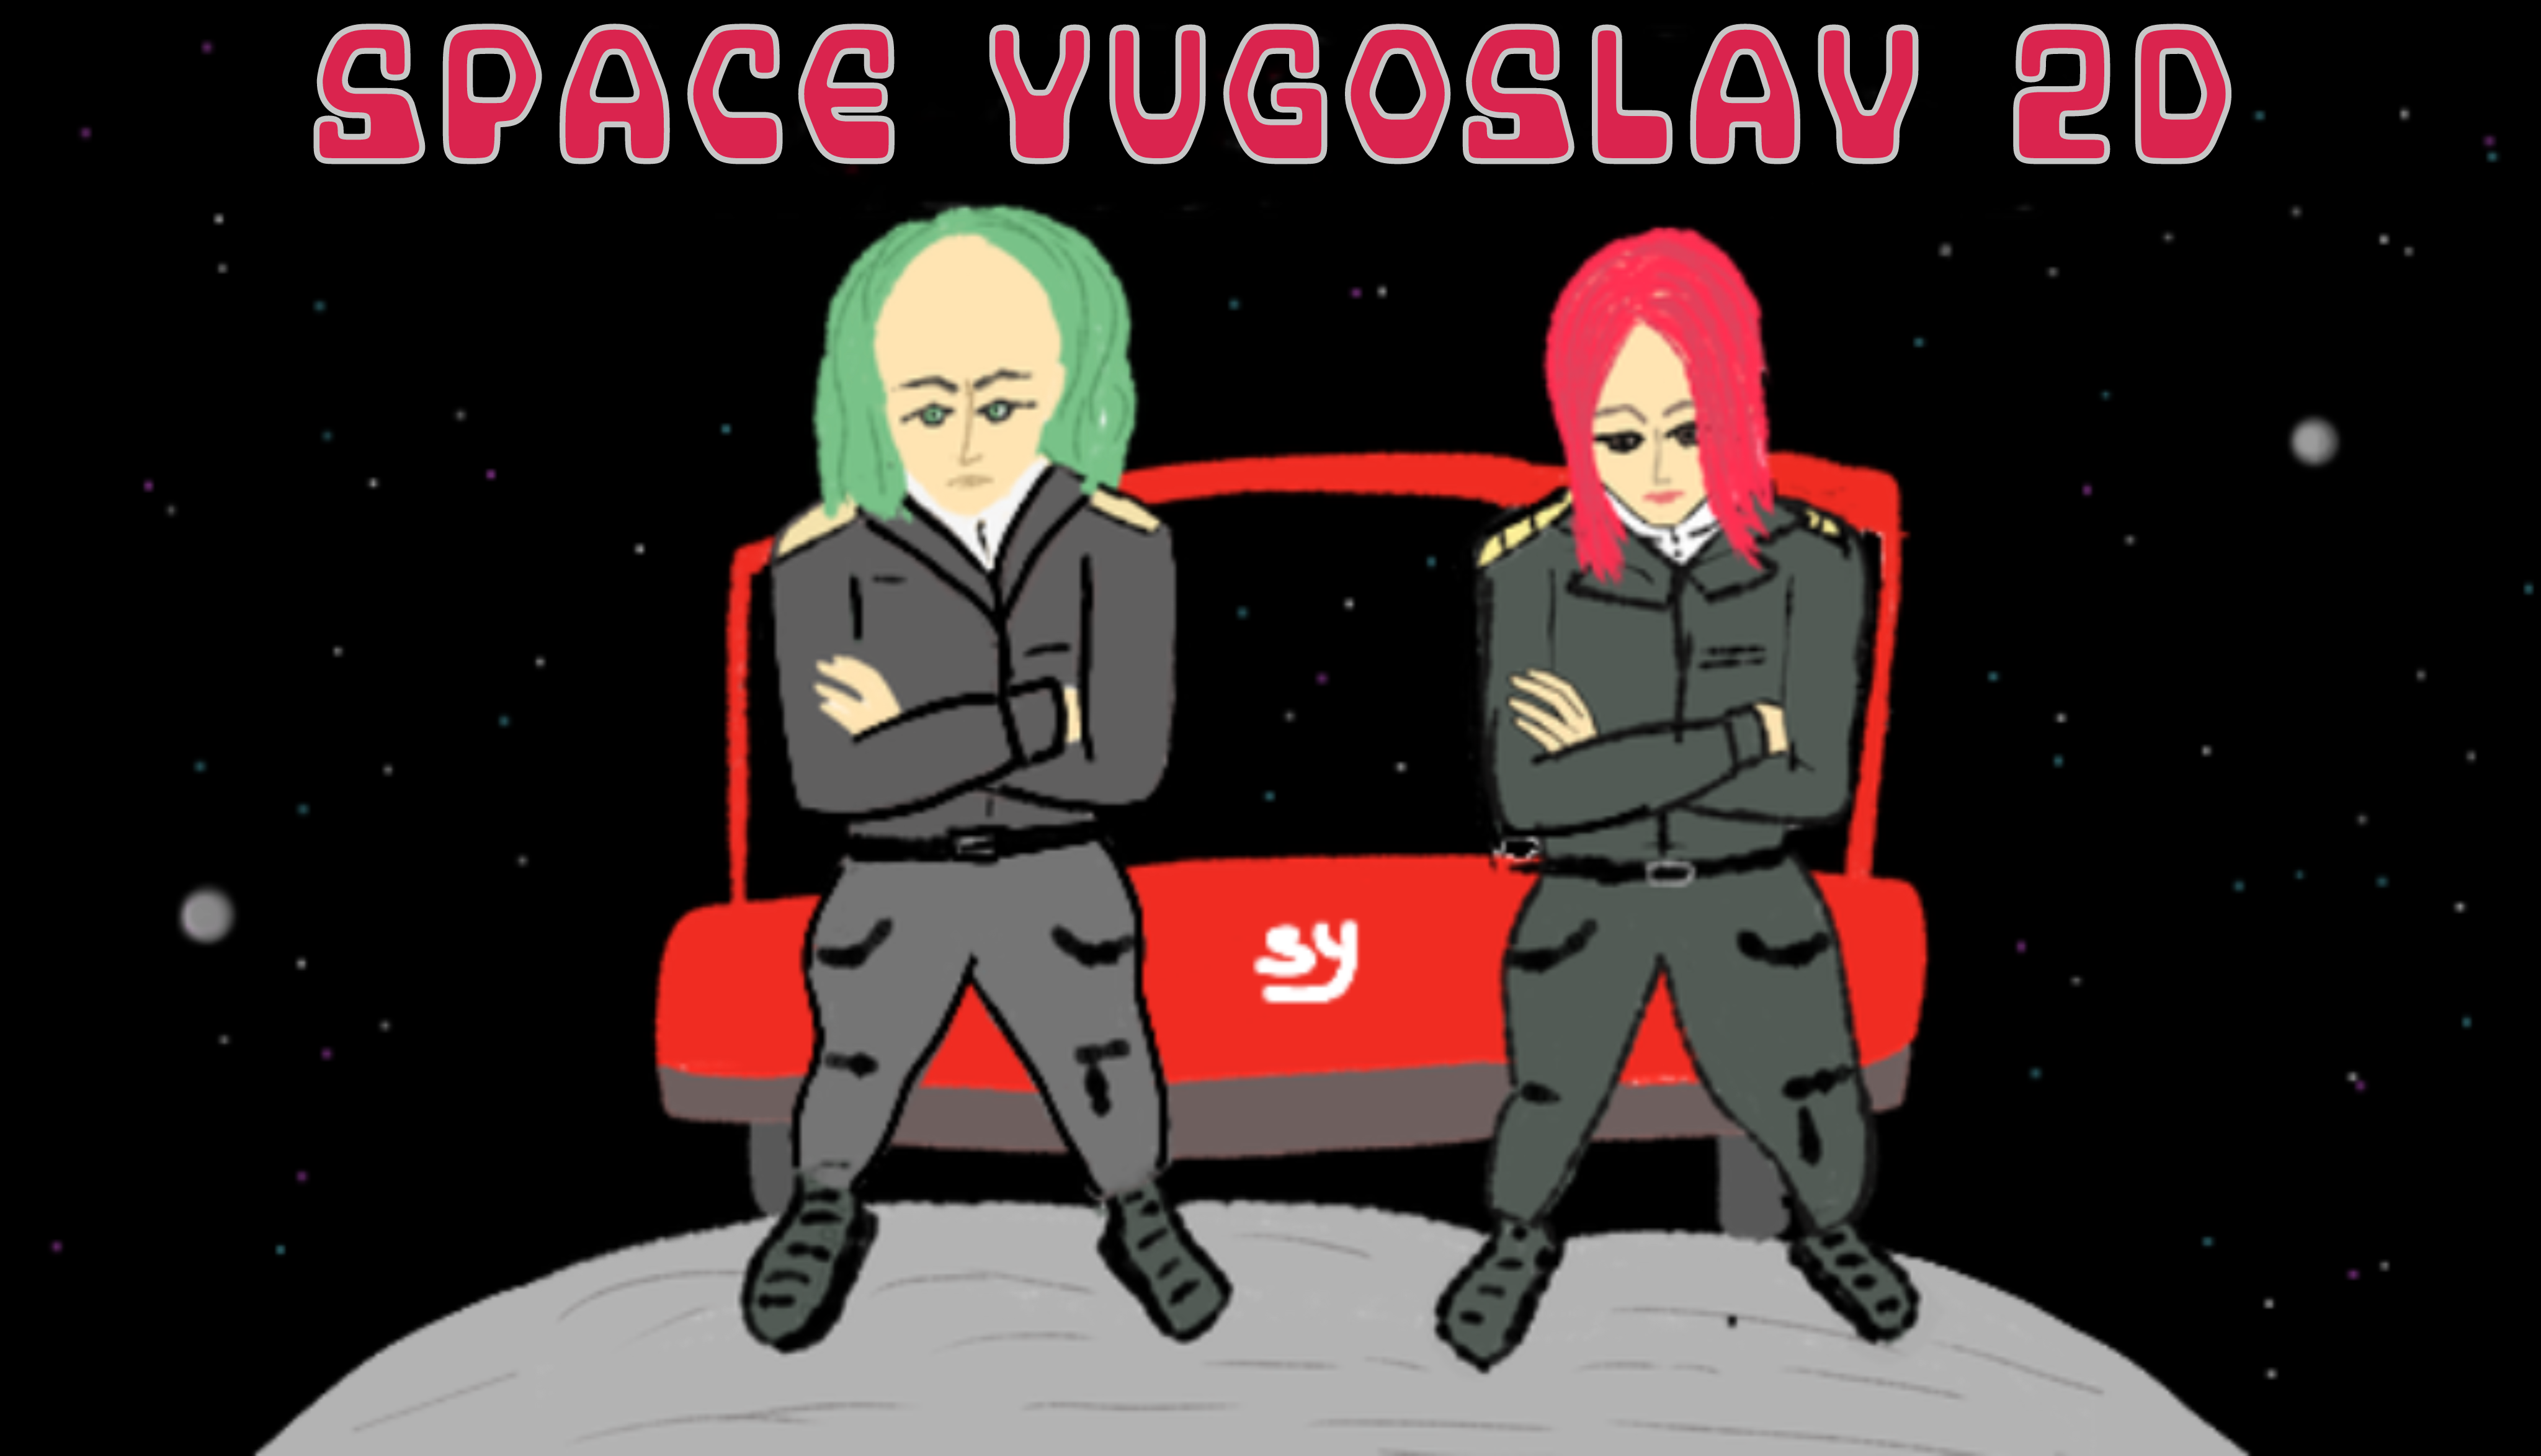 Space Yugoslav Concept art